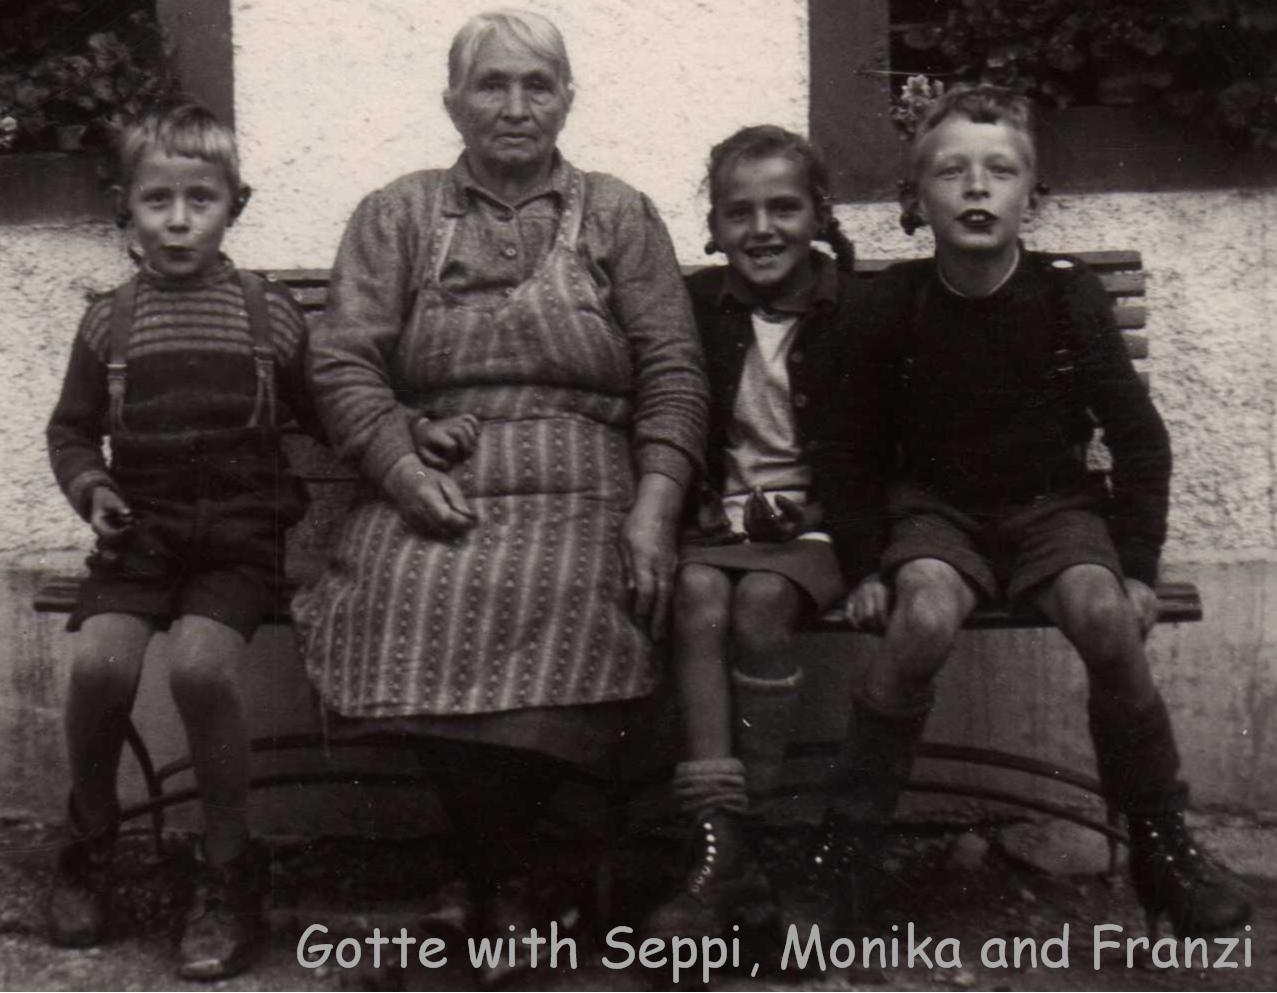 Monika, Gotte, Franzi and I